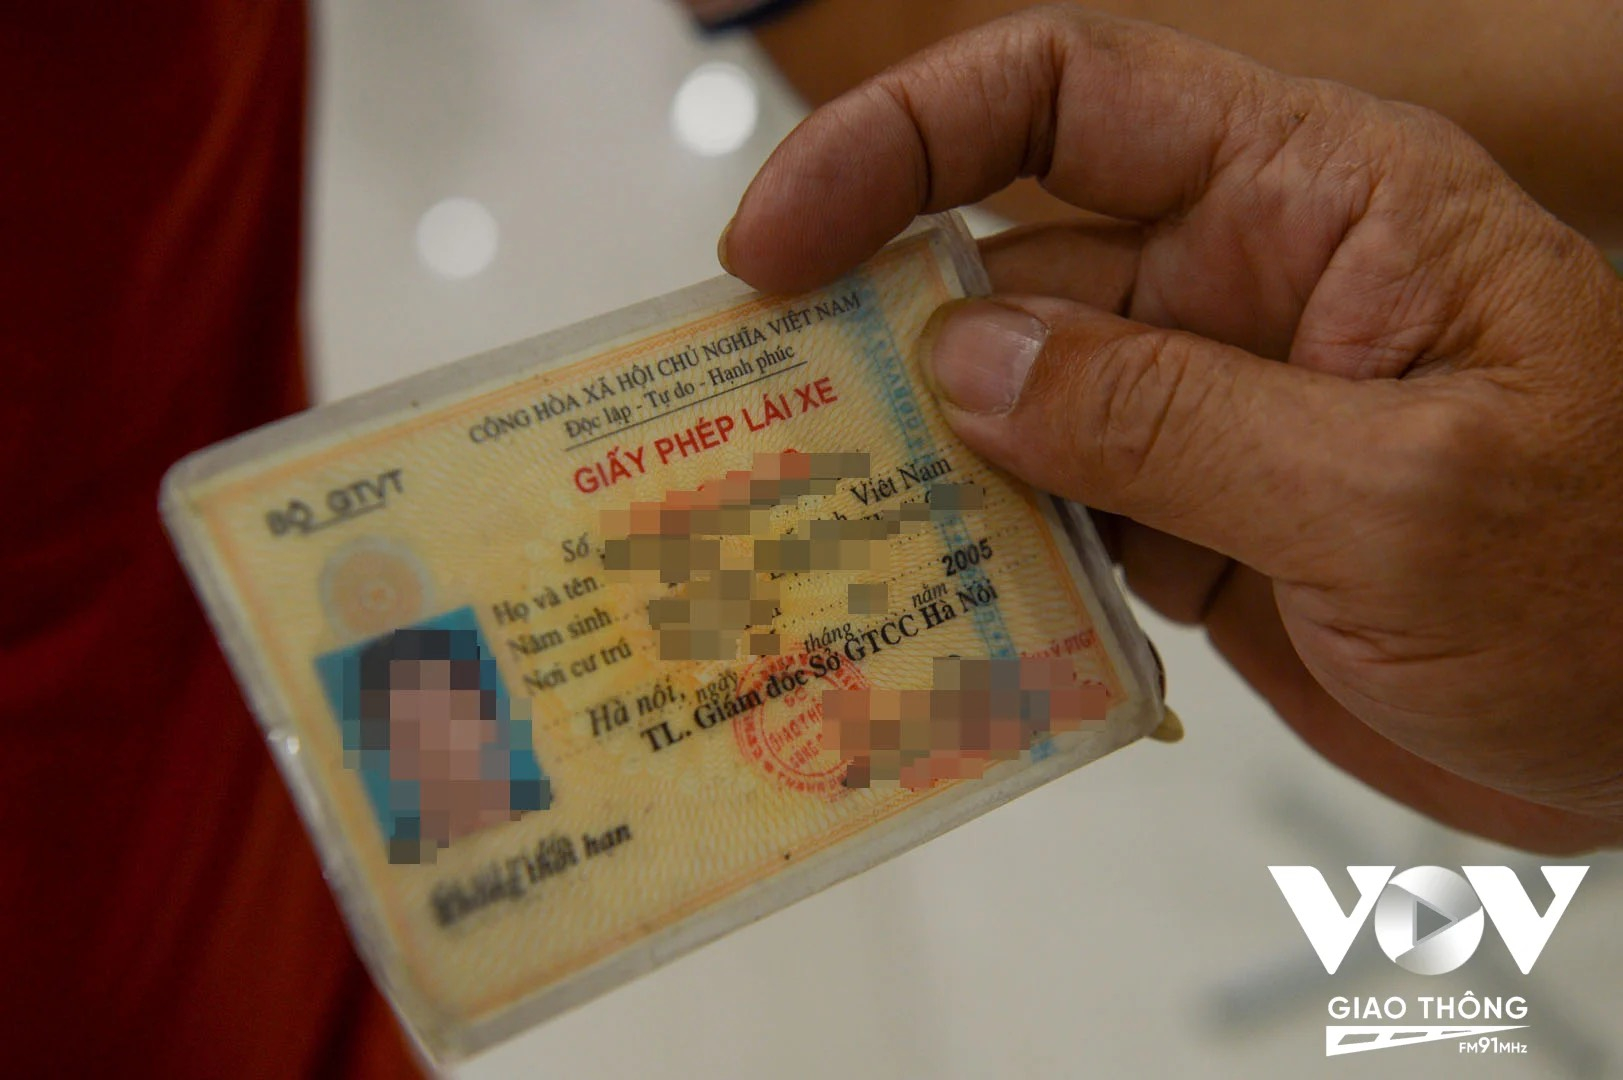 Đại diện lãnh đạo Cục Đường bộ Việt Nam cho biết, hiện đơn vị chưa bắt buộc người dân đổi giấy phép lái xe dạng bìa cứng sang sạng PET.